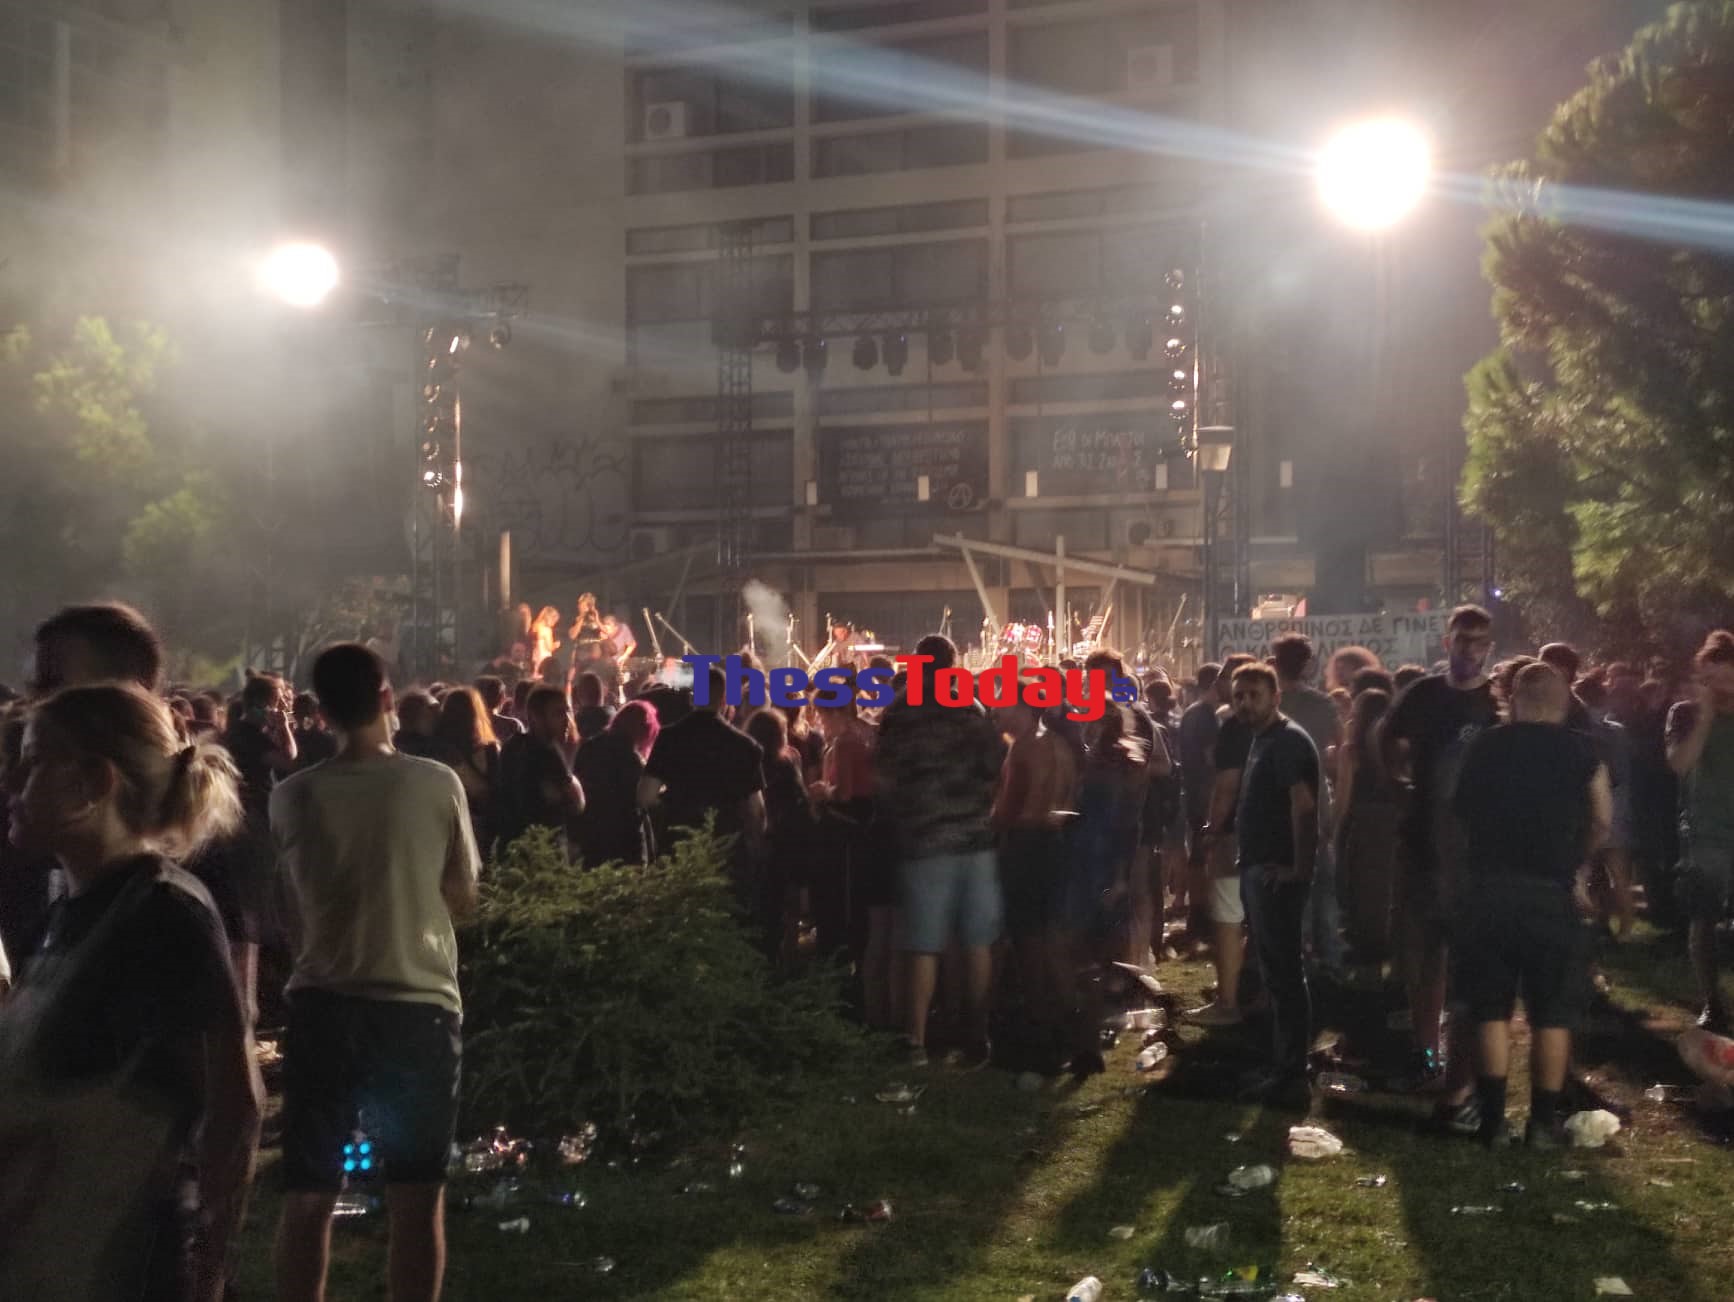 Θεσσαλονίκη: Νύχτα εκτεταμένων επεισοδίων στο ΑΠΘ και στο κέντρο της πόλης – Ξεκίνησαν από συναυλία στο πανεπιστήμιο